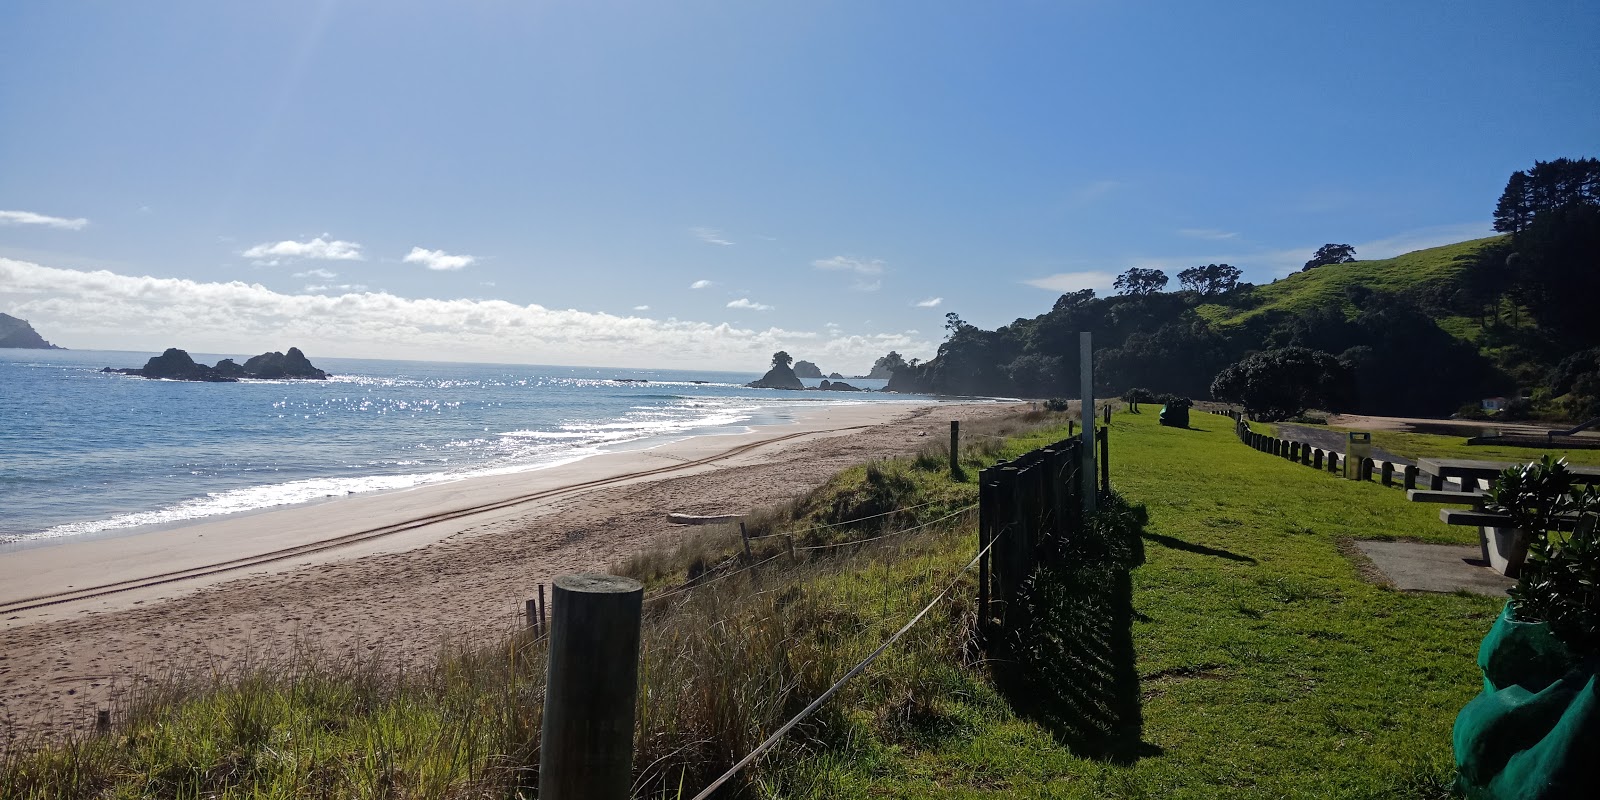 Foto af Tauranga Bay Beach - populært sted blandt afslapningskendere